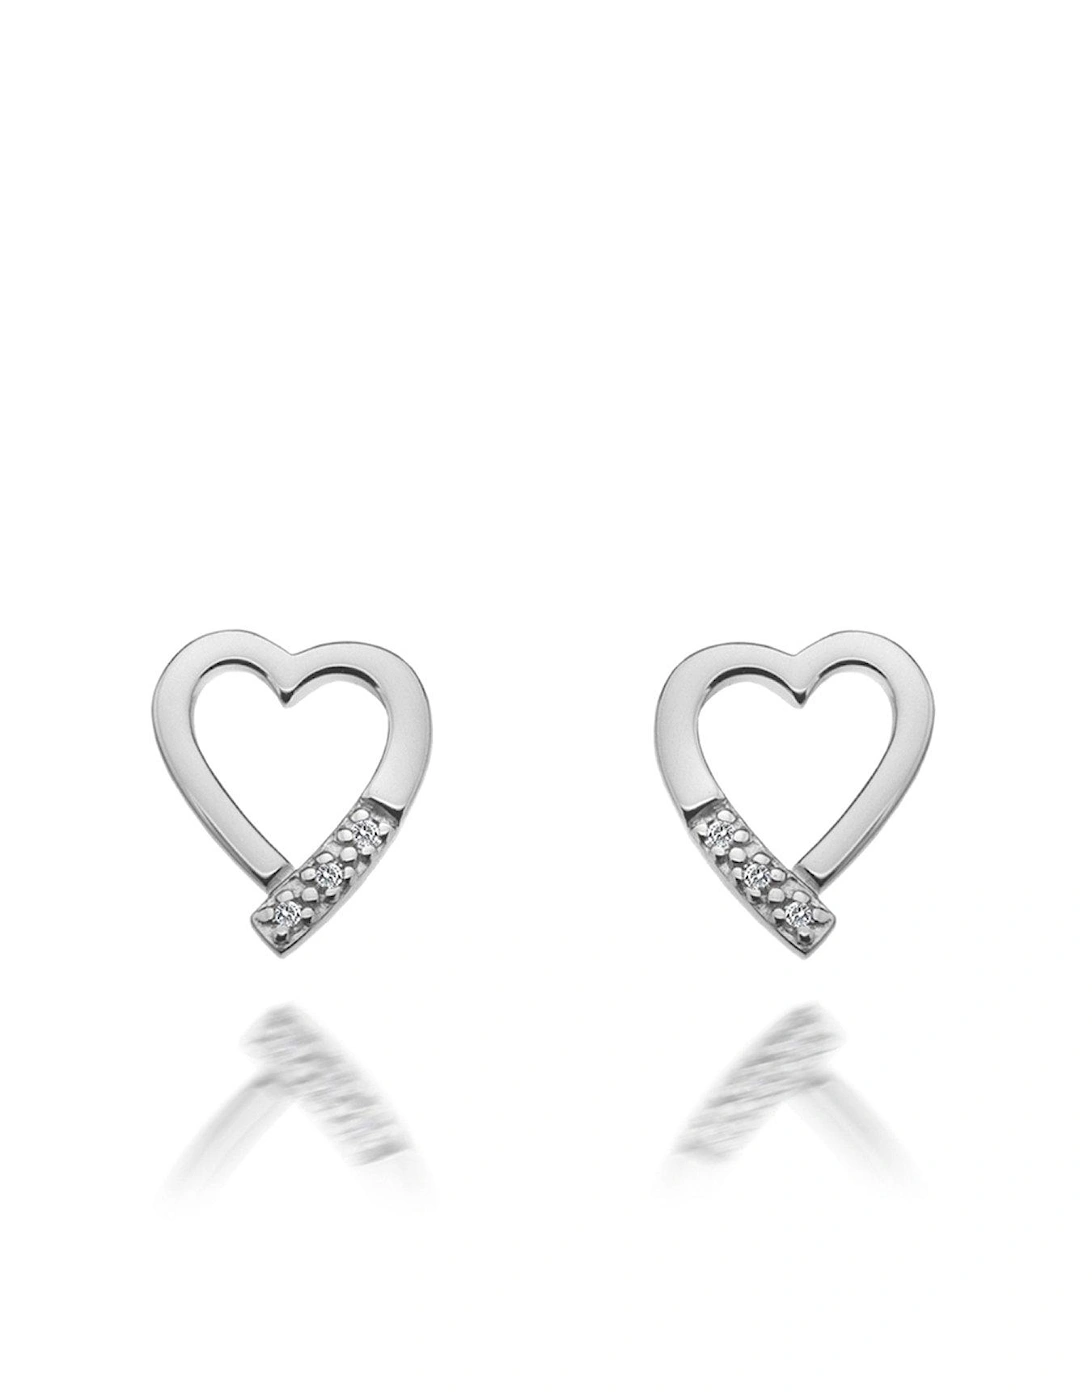 Romantic Heart Stud Earrings, 3 of 2